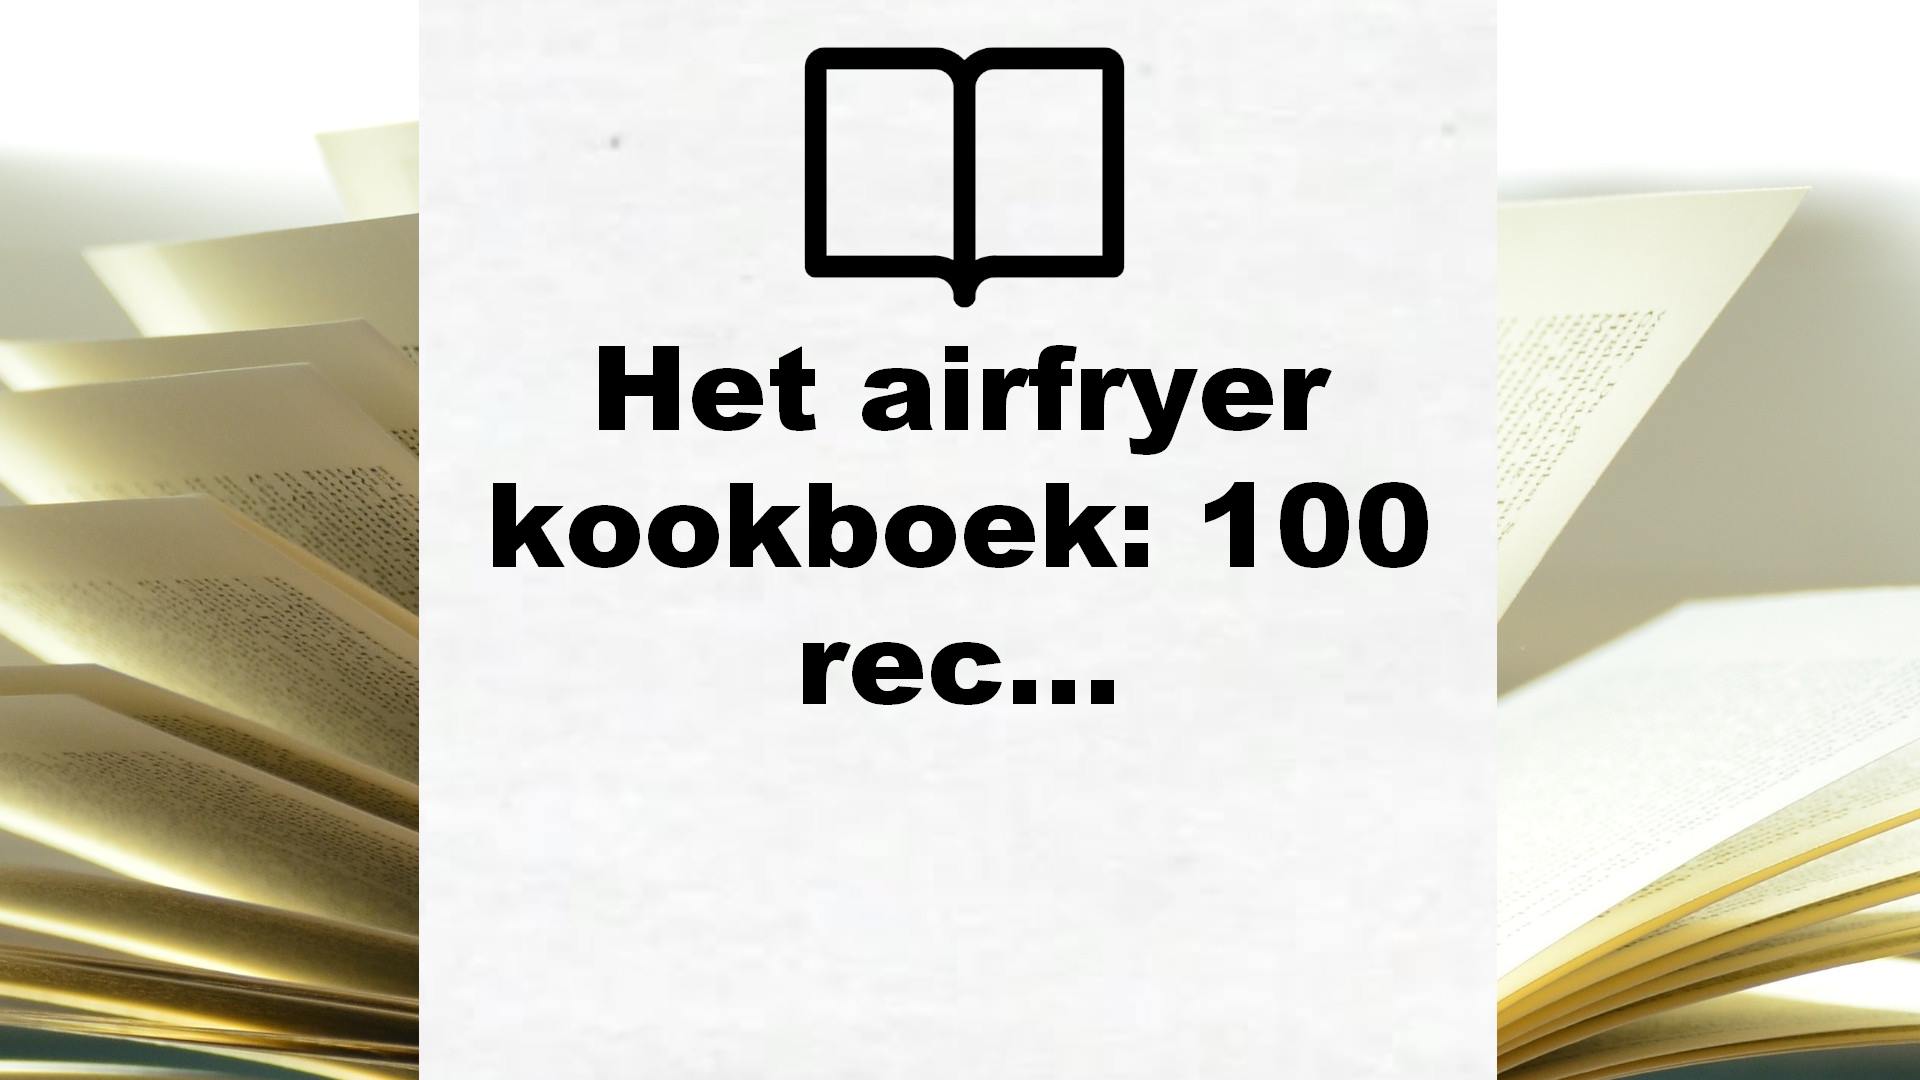 Het airfryer kookboek: 100 recepten – Boekrecensie